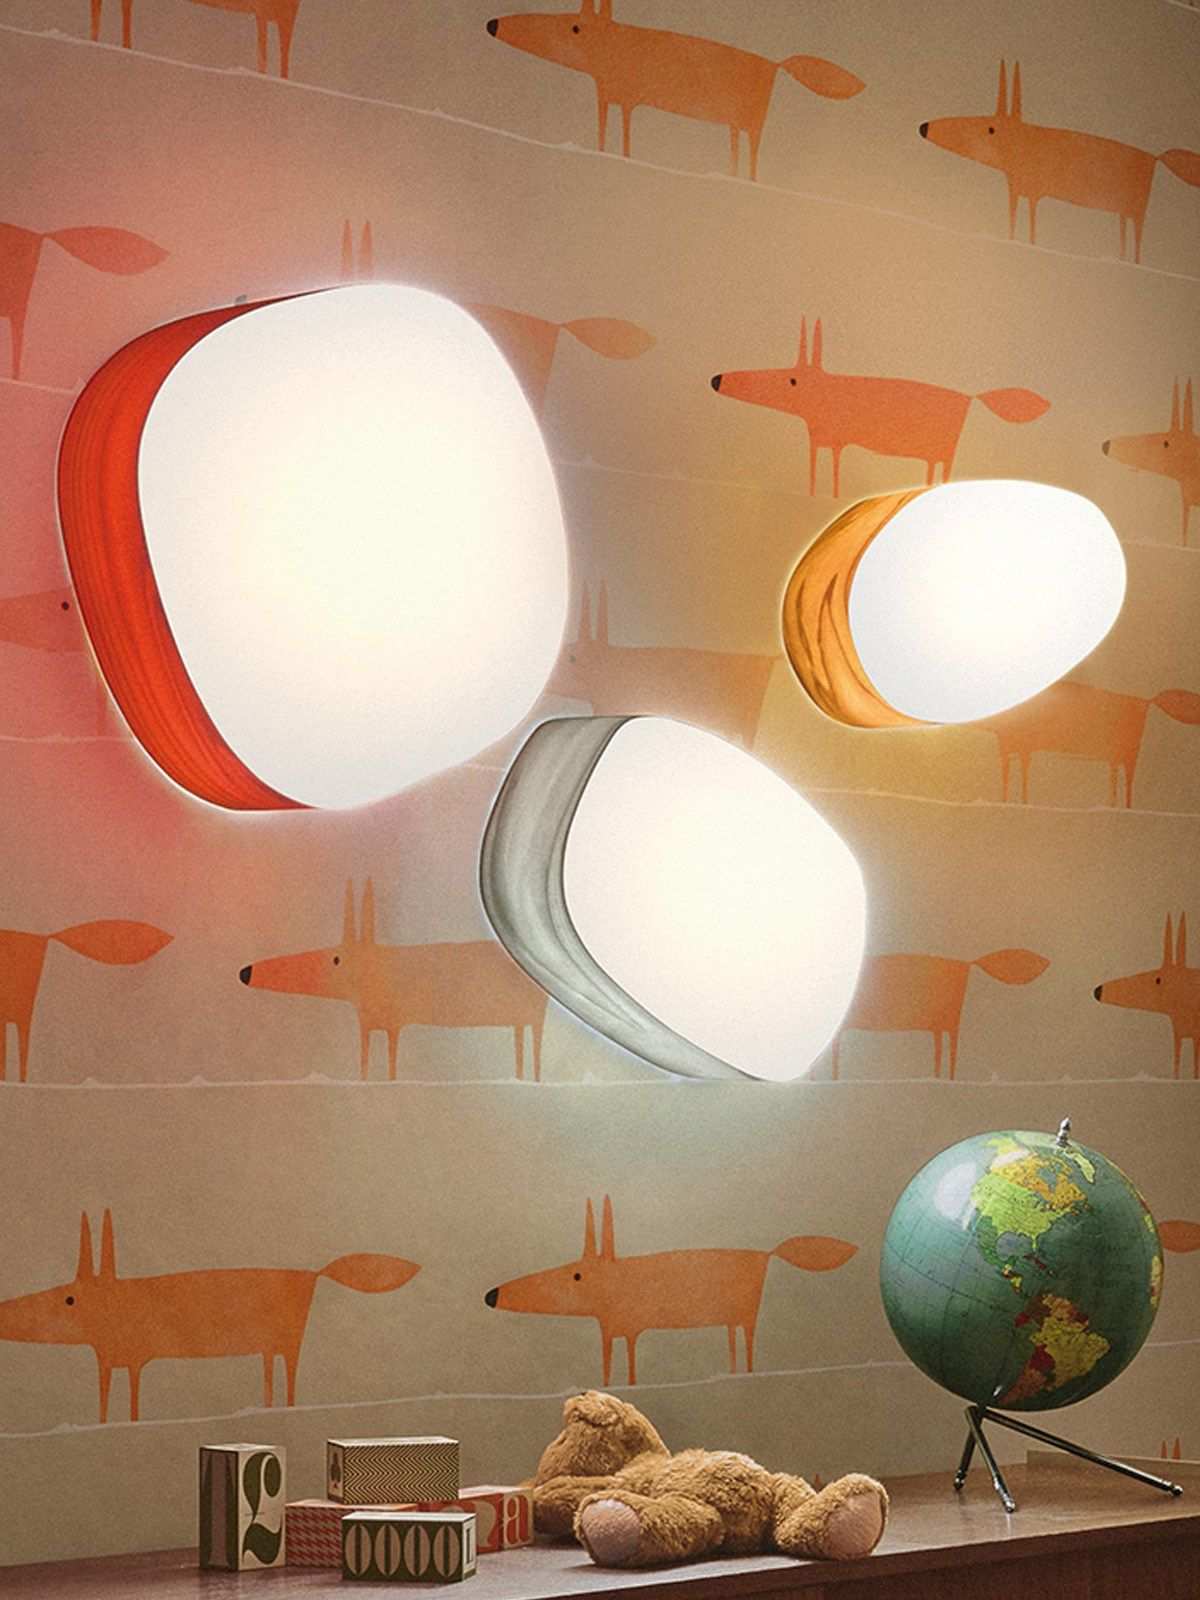 Guijarros Lzf Designort Com Deckenleuchten Lampe Design Leuchten